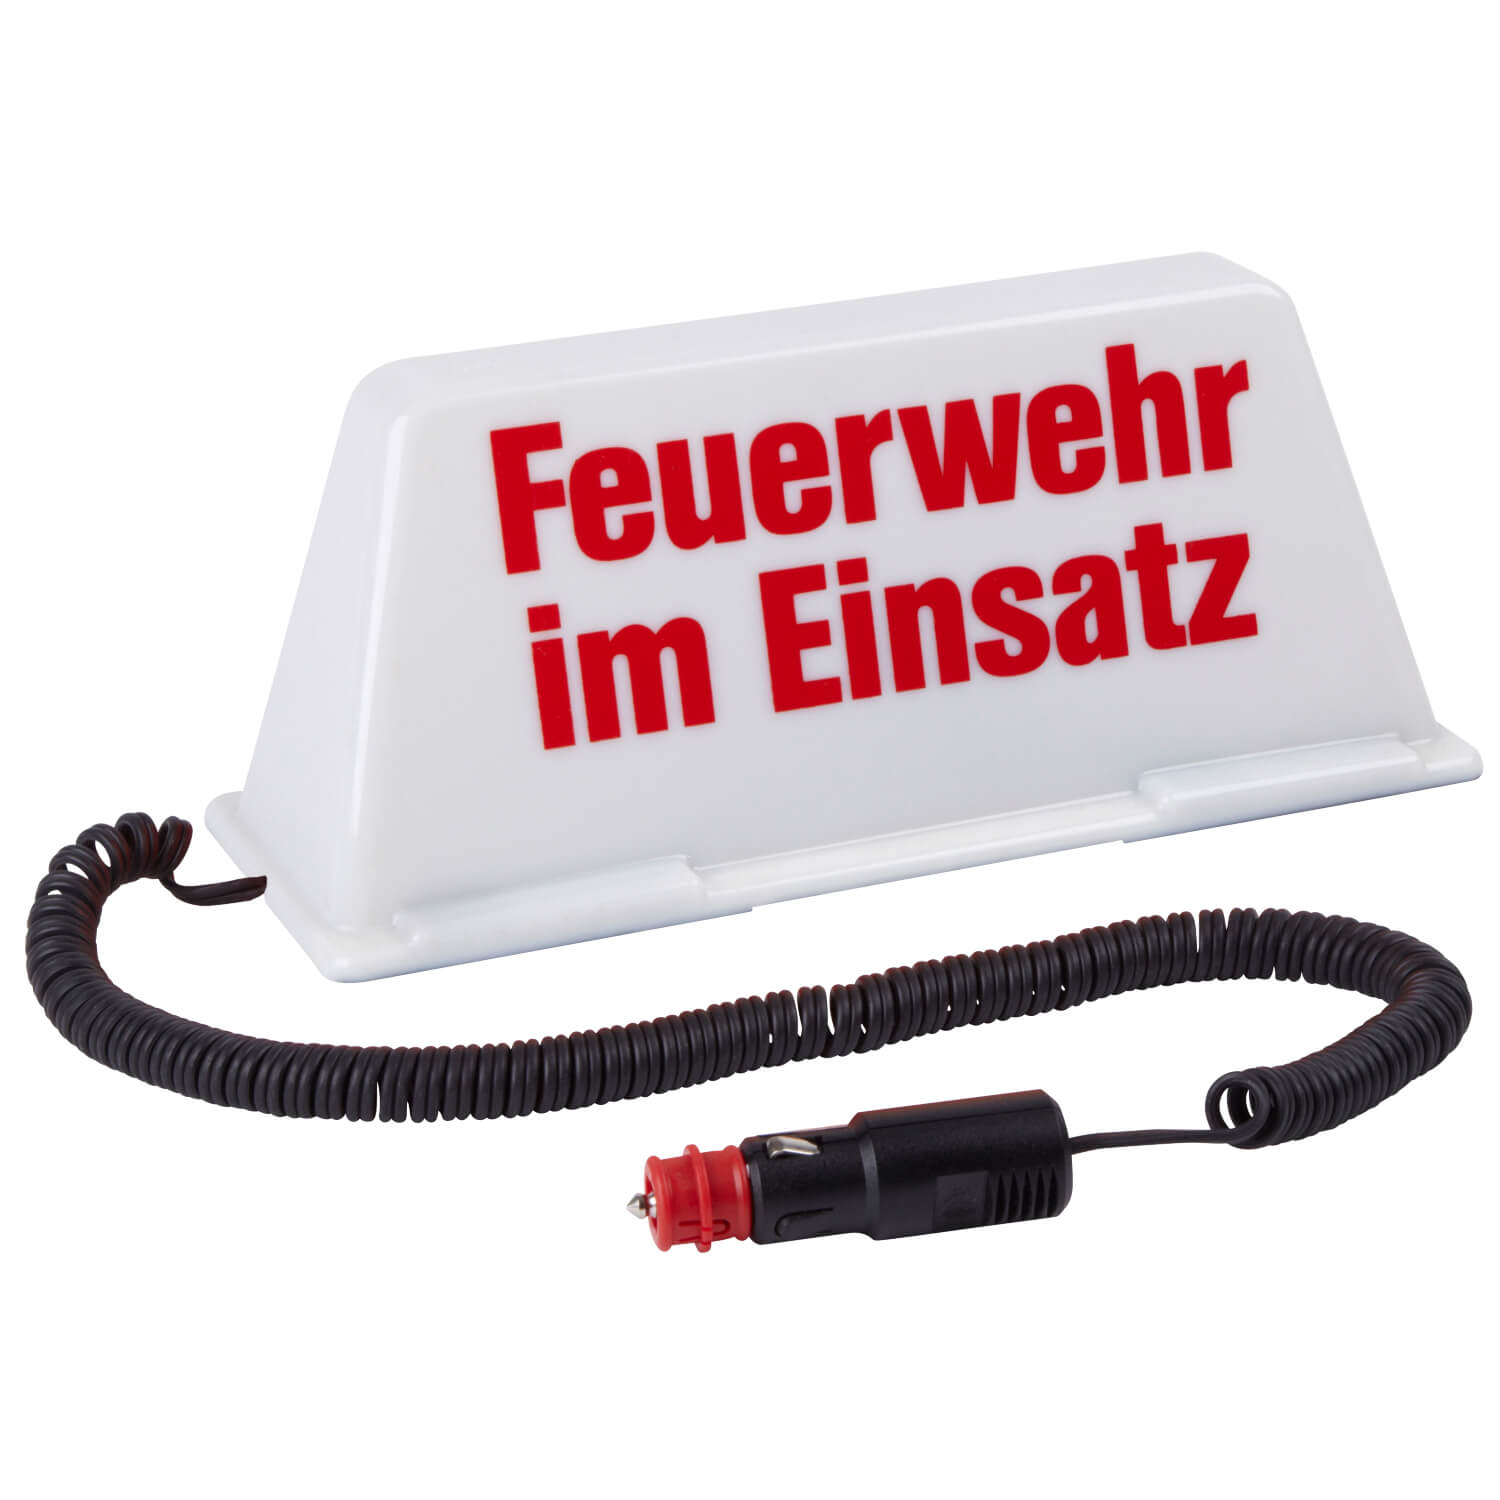 https://www.medundorg.de/shop/images/product_images/original_images/Dachschild-Feuerwehr-im-Einsatz-beleuchtet.jpg